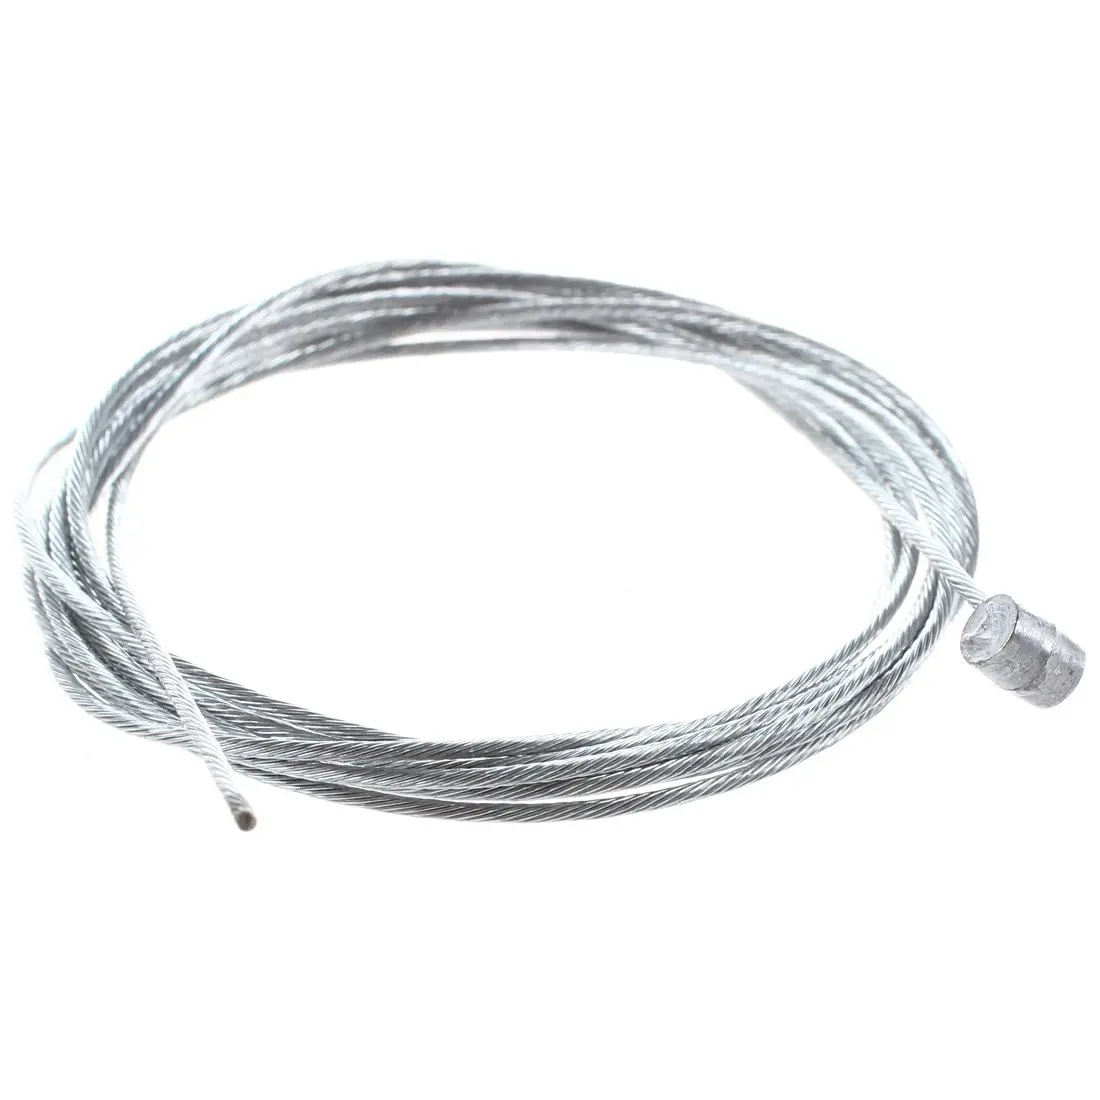 LGFM-5 шт. велосипедный велосипед 1 мм Диаметр ручной кабель для заднего тормоза провода комплект 1,75 м серебро